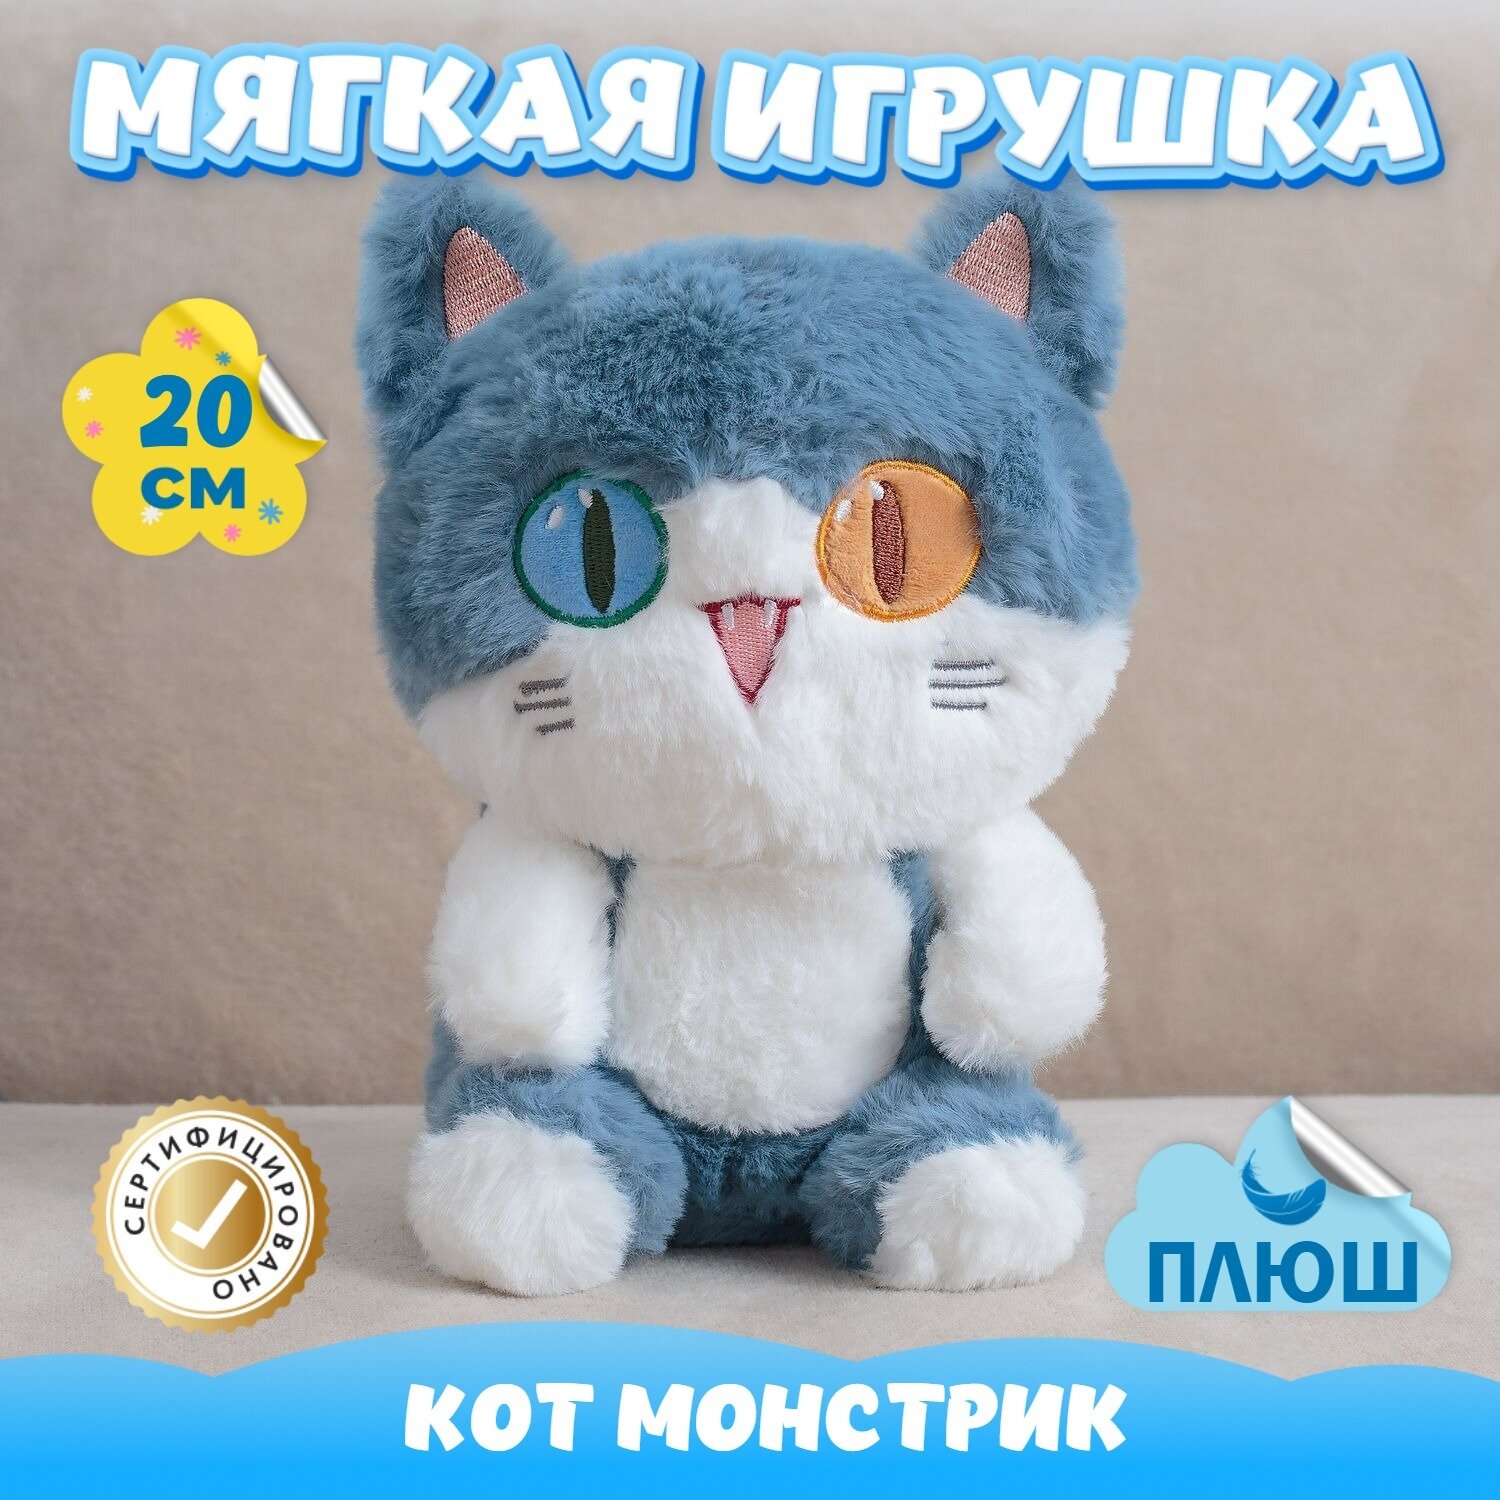 Мягкая игрушка Кот Монстрик для малышей / Плюшевый Котик для сна KiDWoW синий 20см